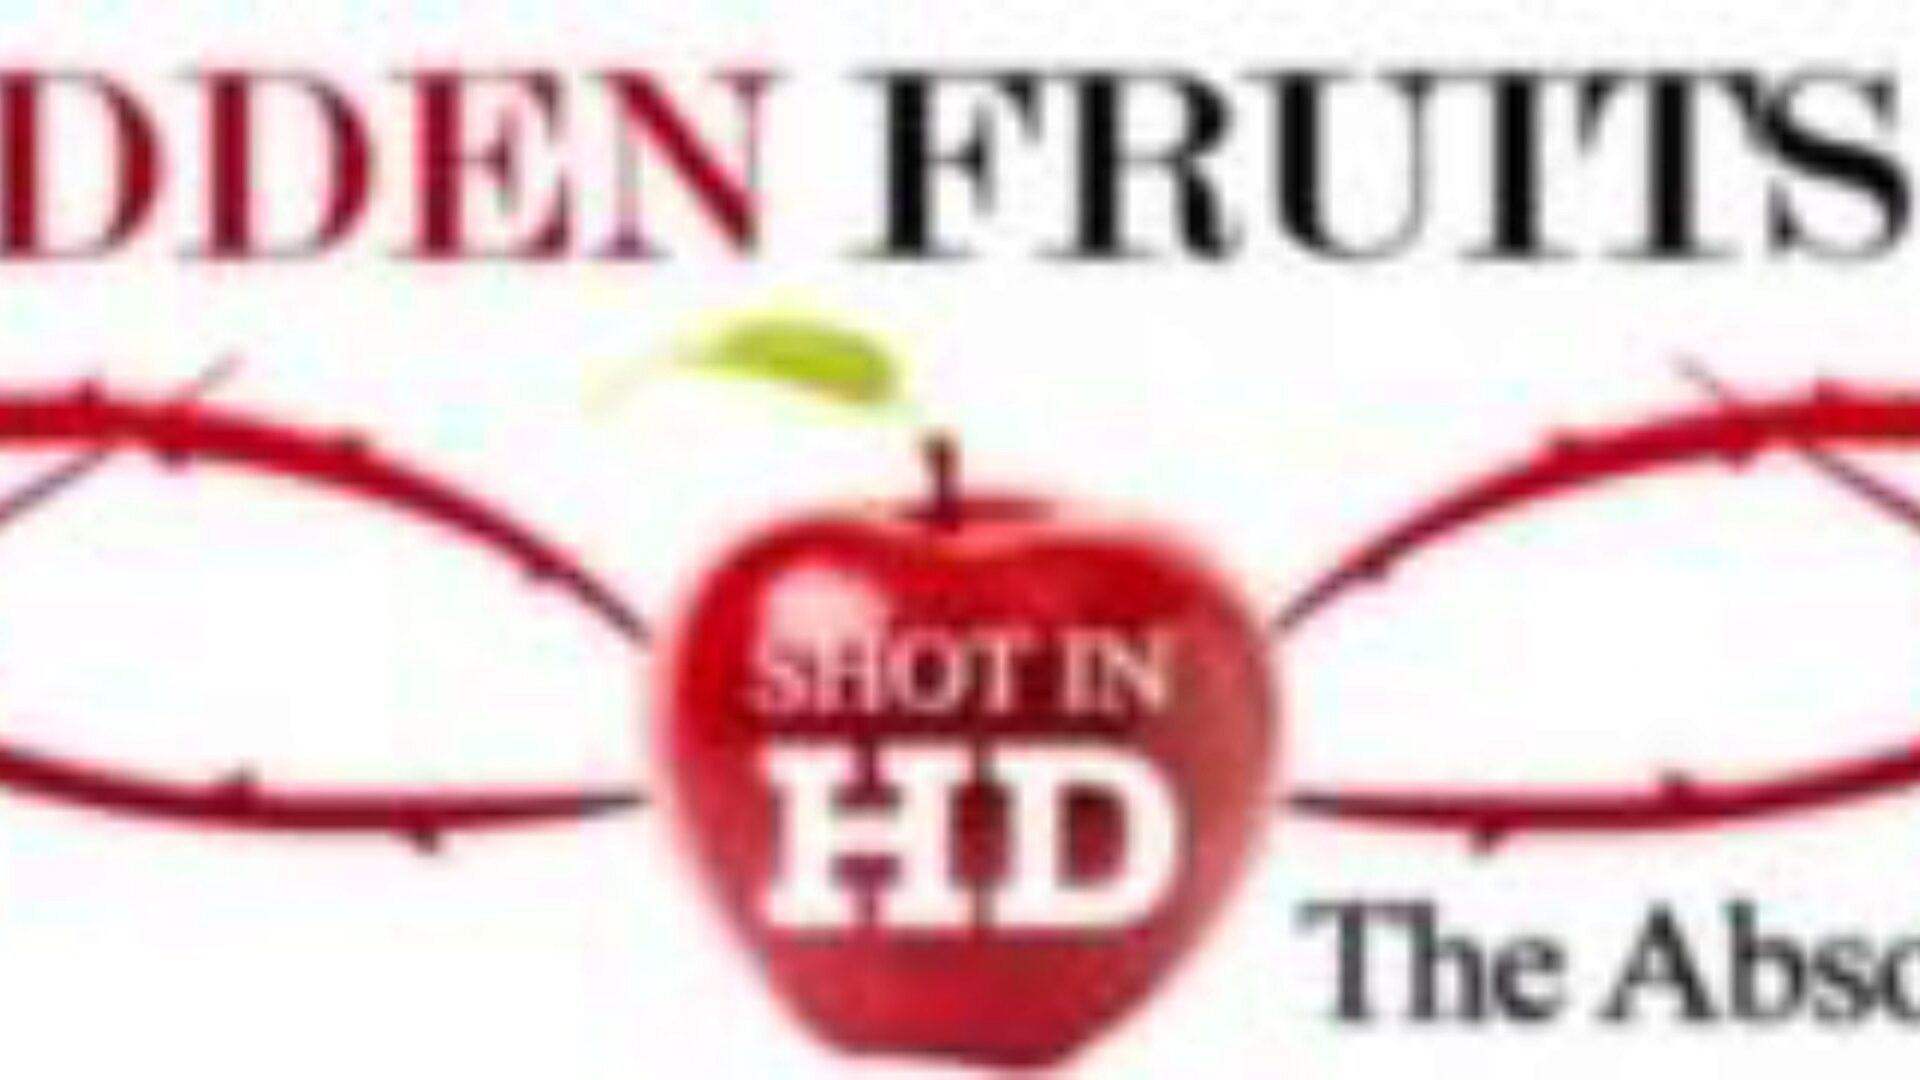 סרטי פירות אסורים: ג'ודי ווסט כפול התחבר כשהוא תקוע בחלון